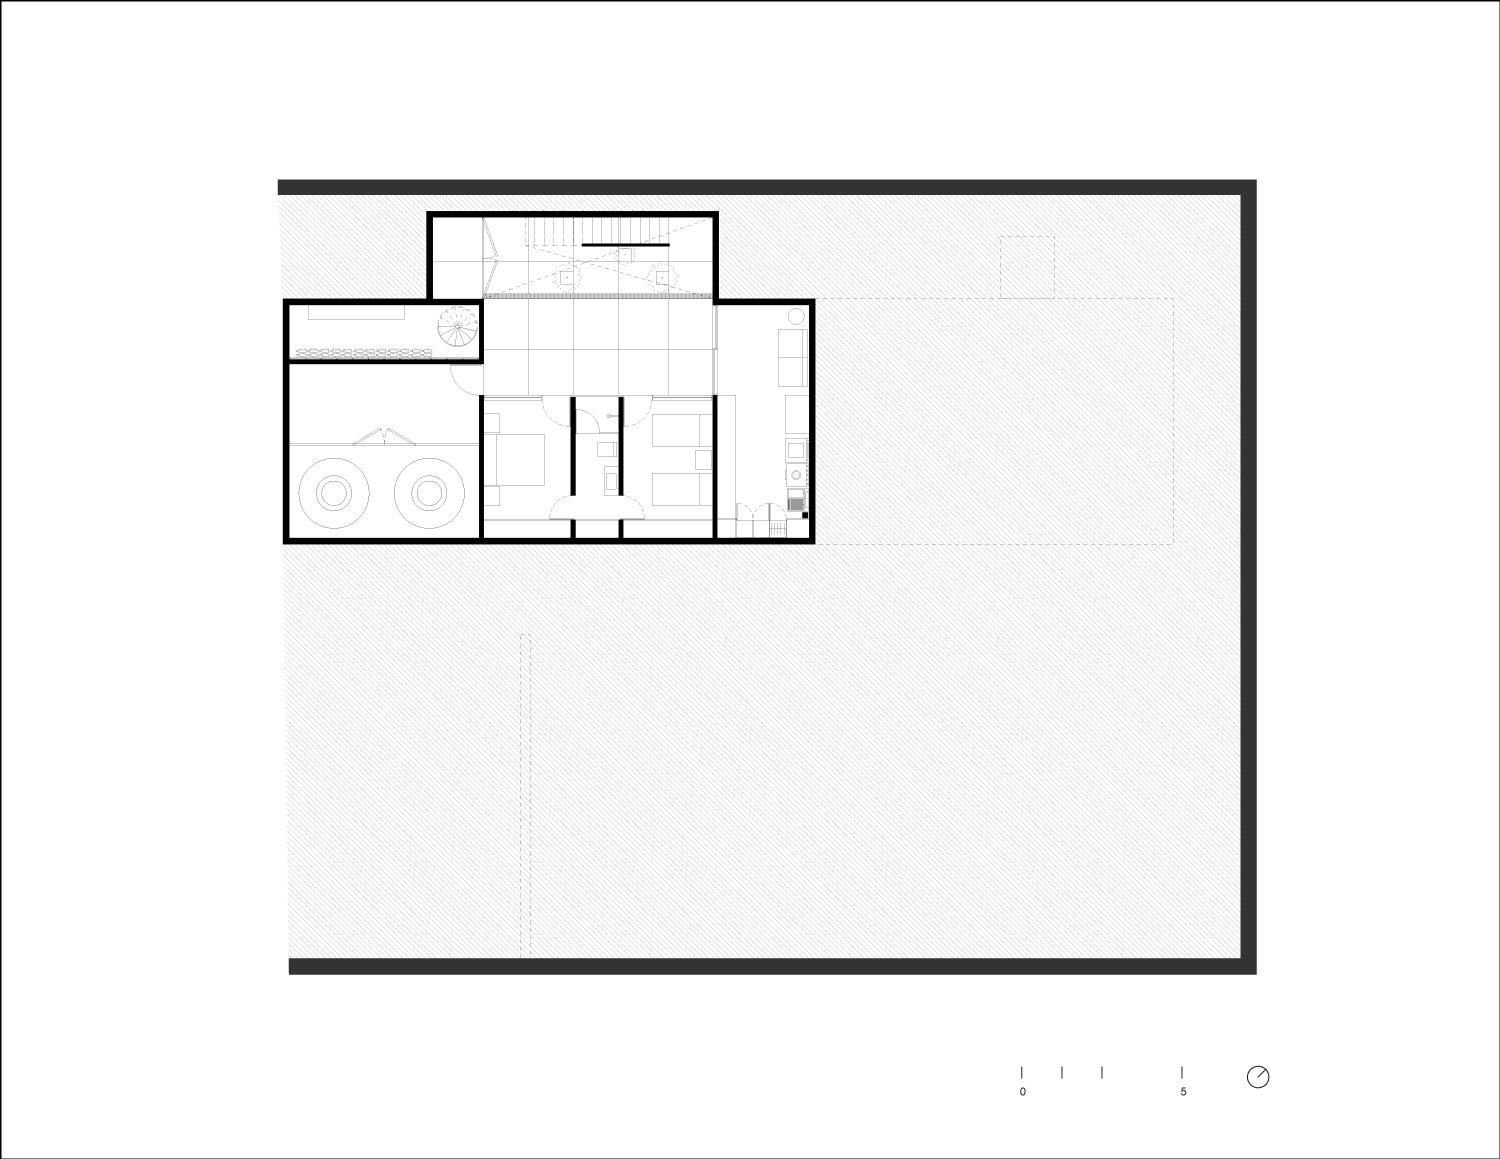 Basement Plan | Ignacio Urquiza, Bernardo Quinzaños, Centro de Colaboración Arquitectónica